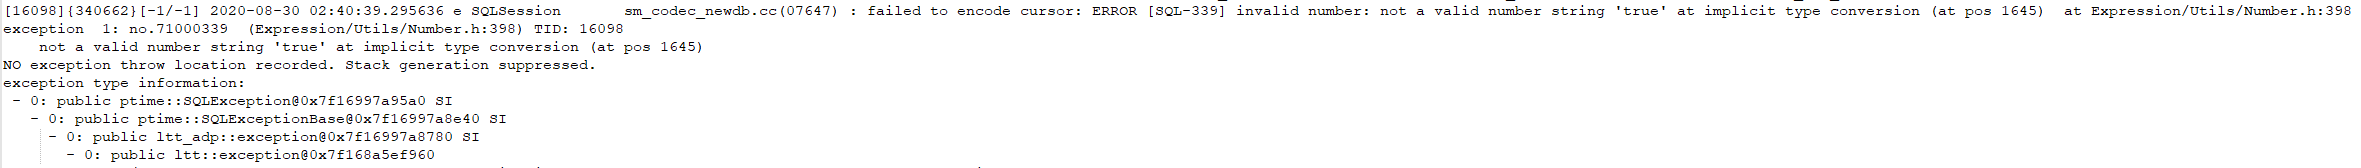 SQL-339.PNG